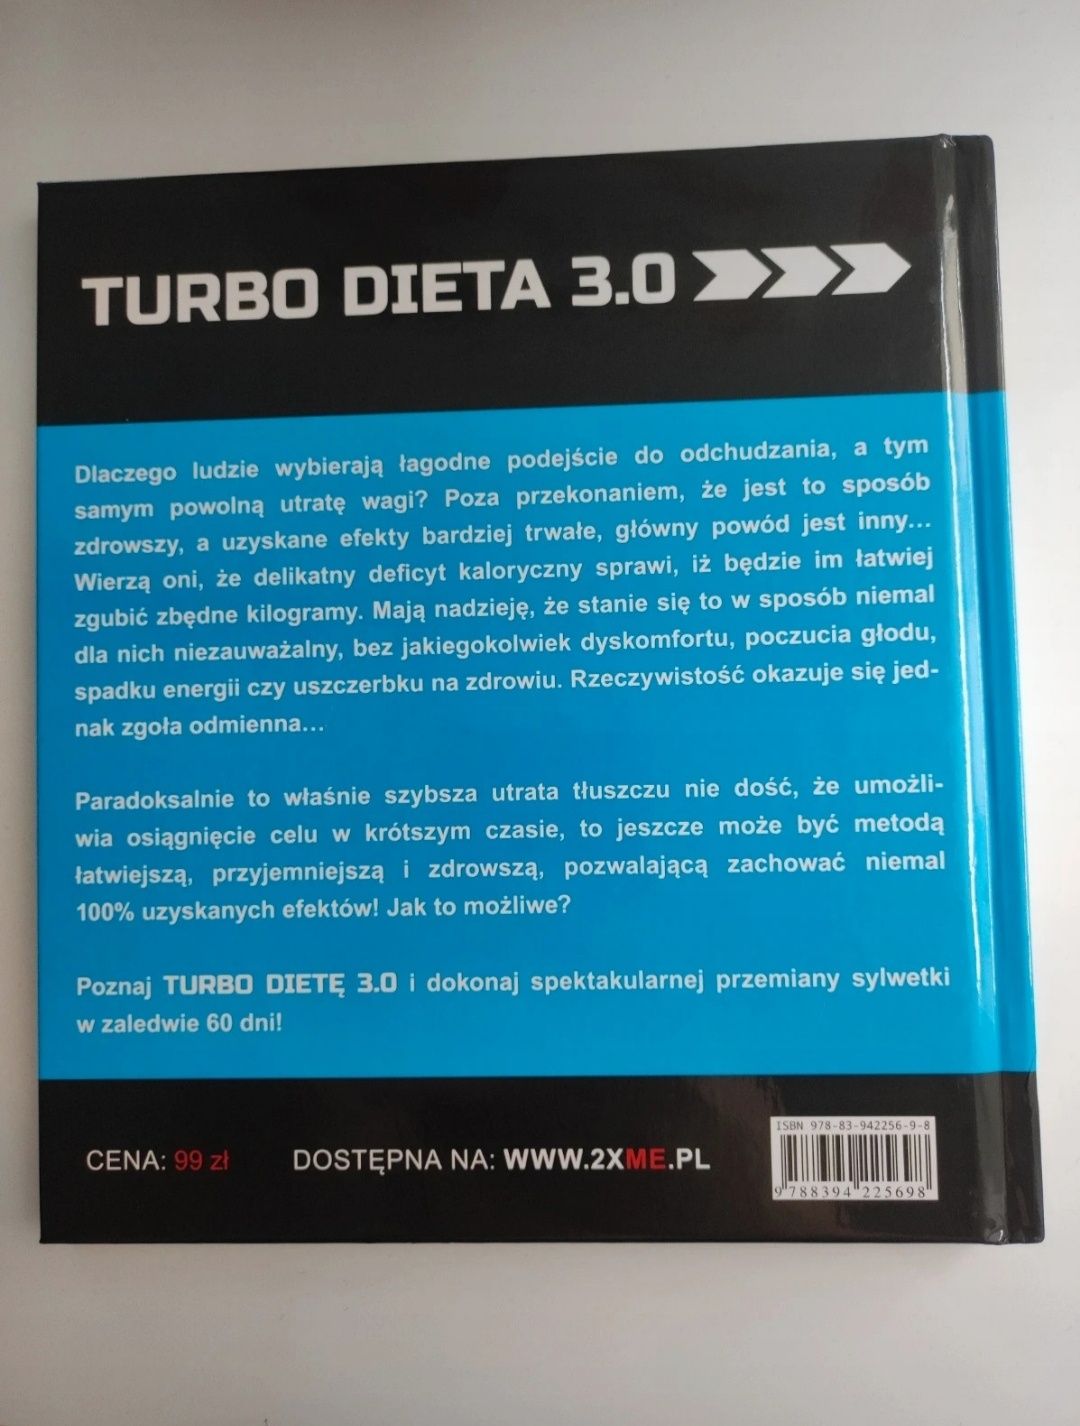 Dieta turbo 3.0 przepisy 2xme